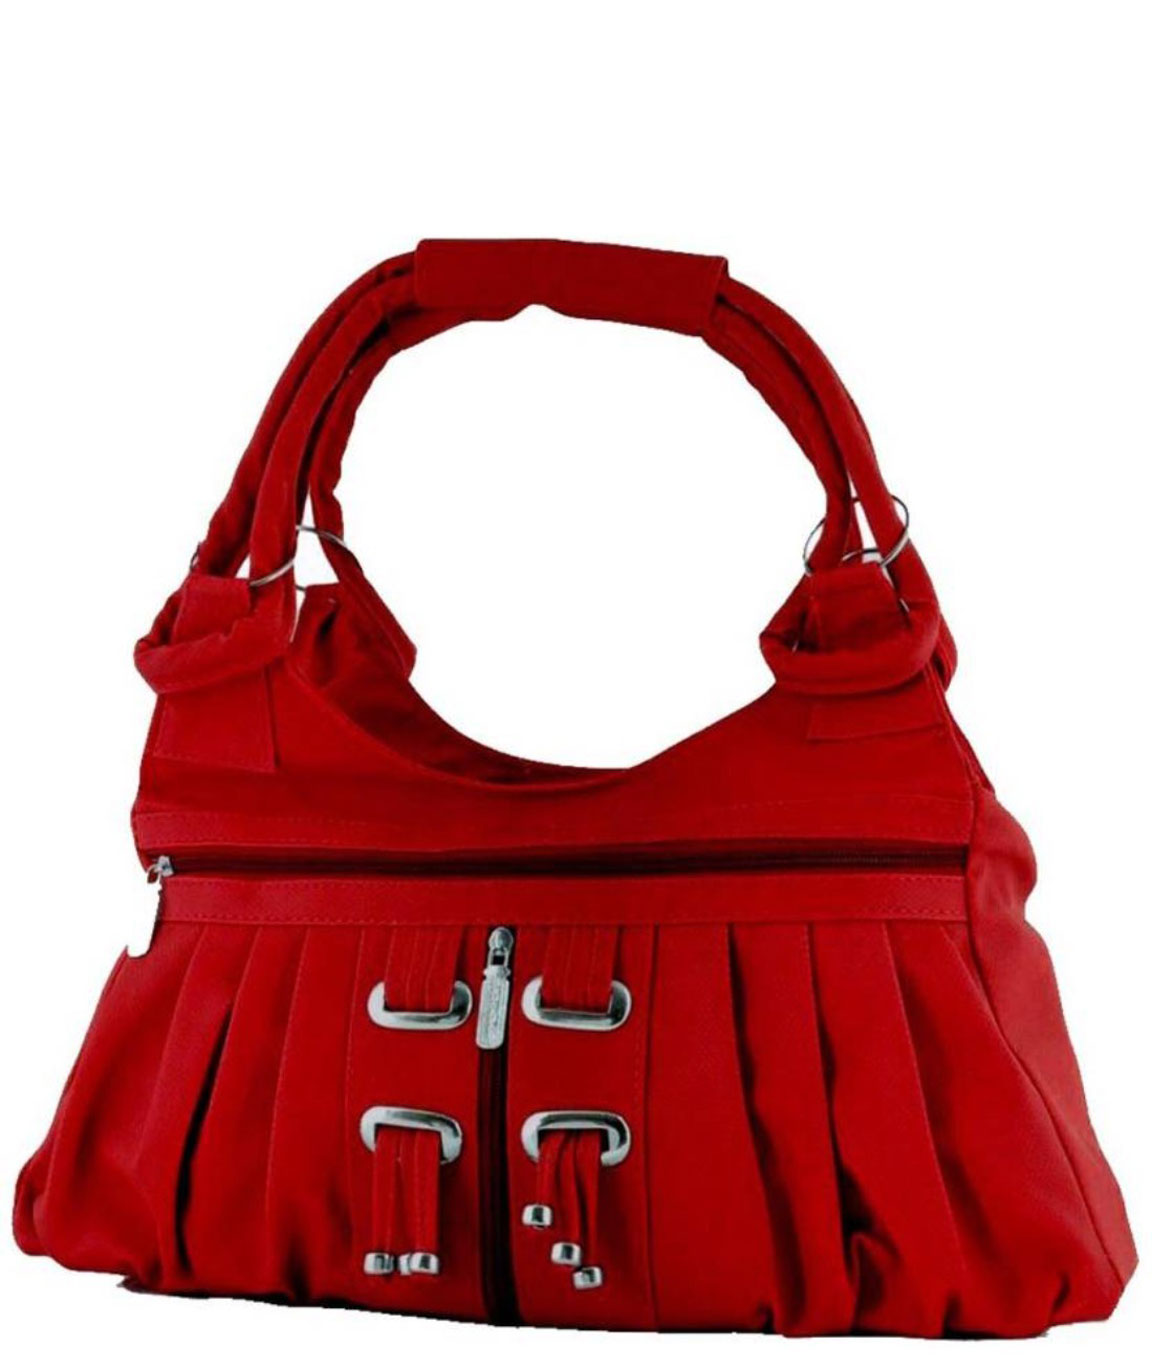 Ladies Handbags at best price in Chennai by Renuka Bag | ID: 22926958597